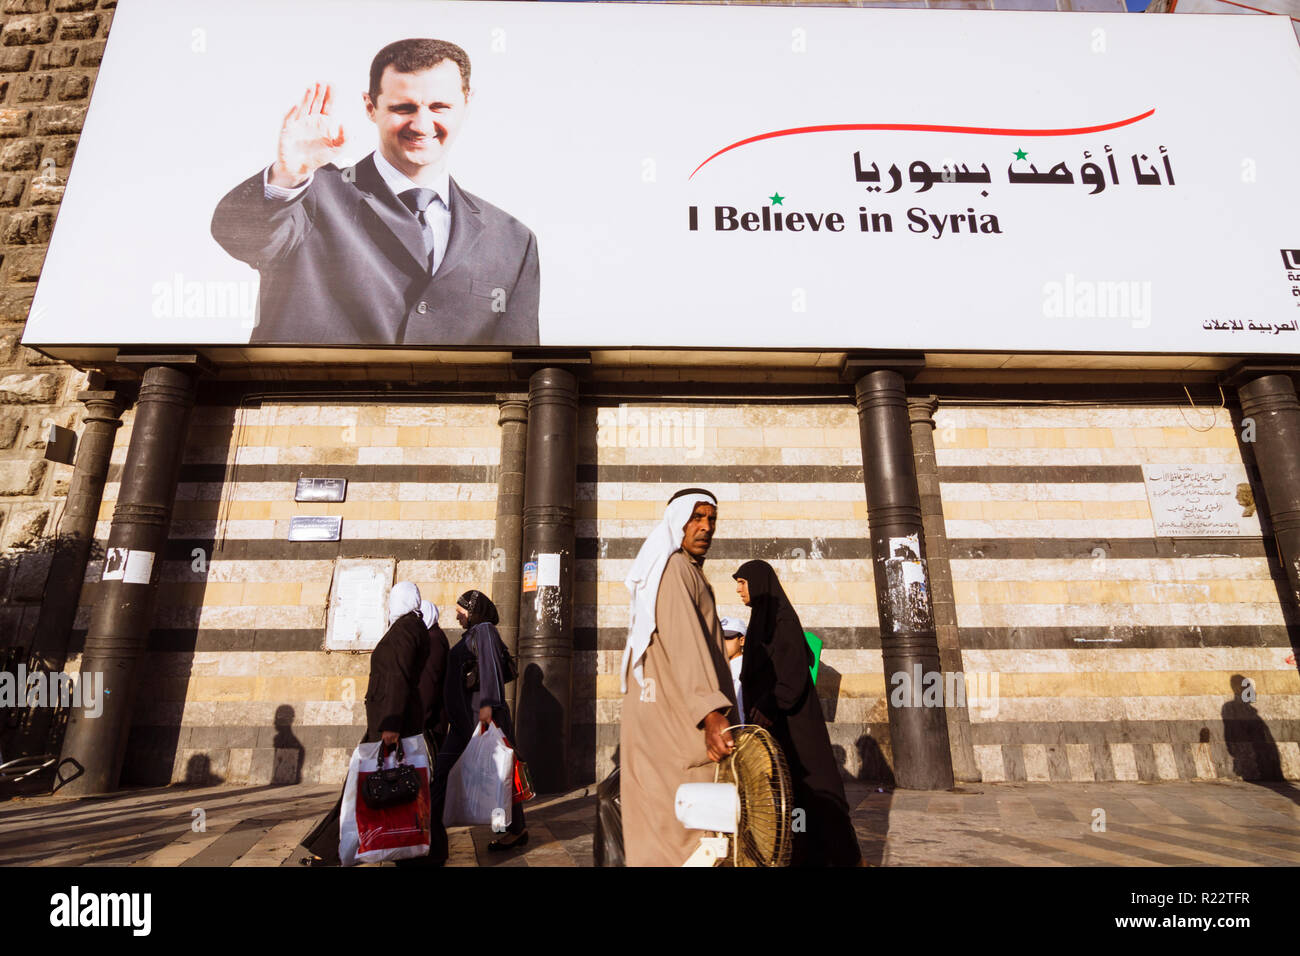 Damasco, Siria : la gente a piedi passato un cartellone del presidente siriano Bashar al-Assad lettura credo in Siria. Foto Stock